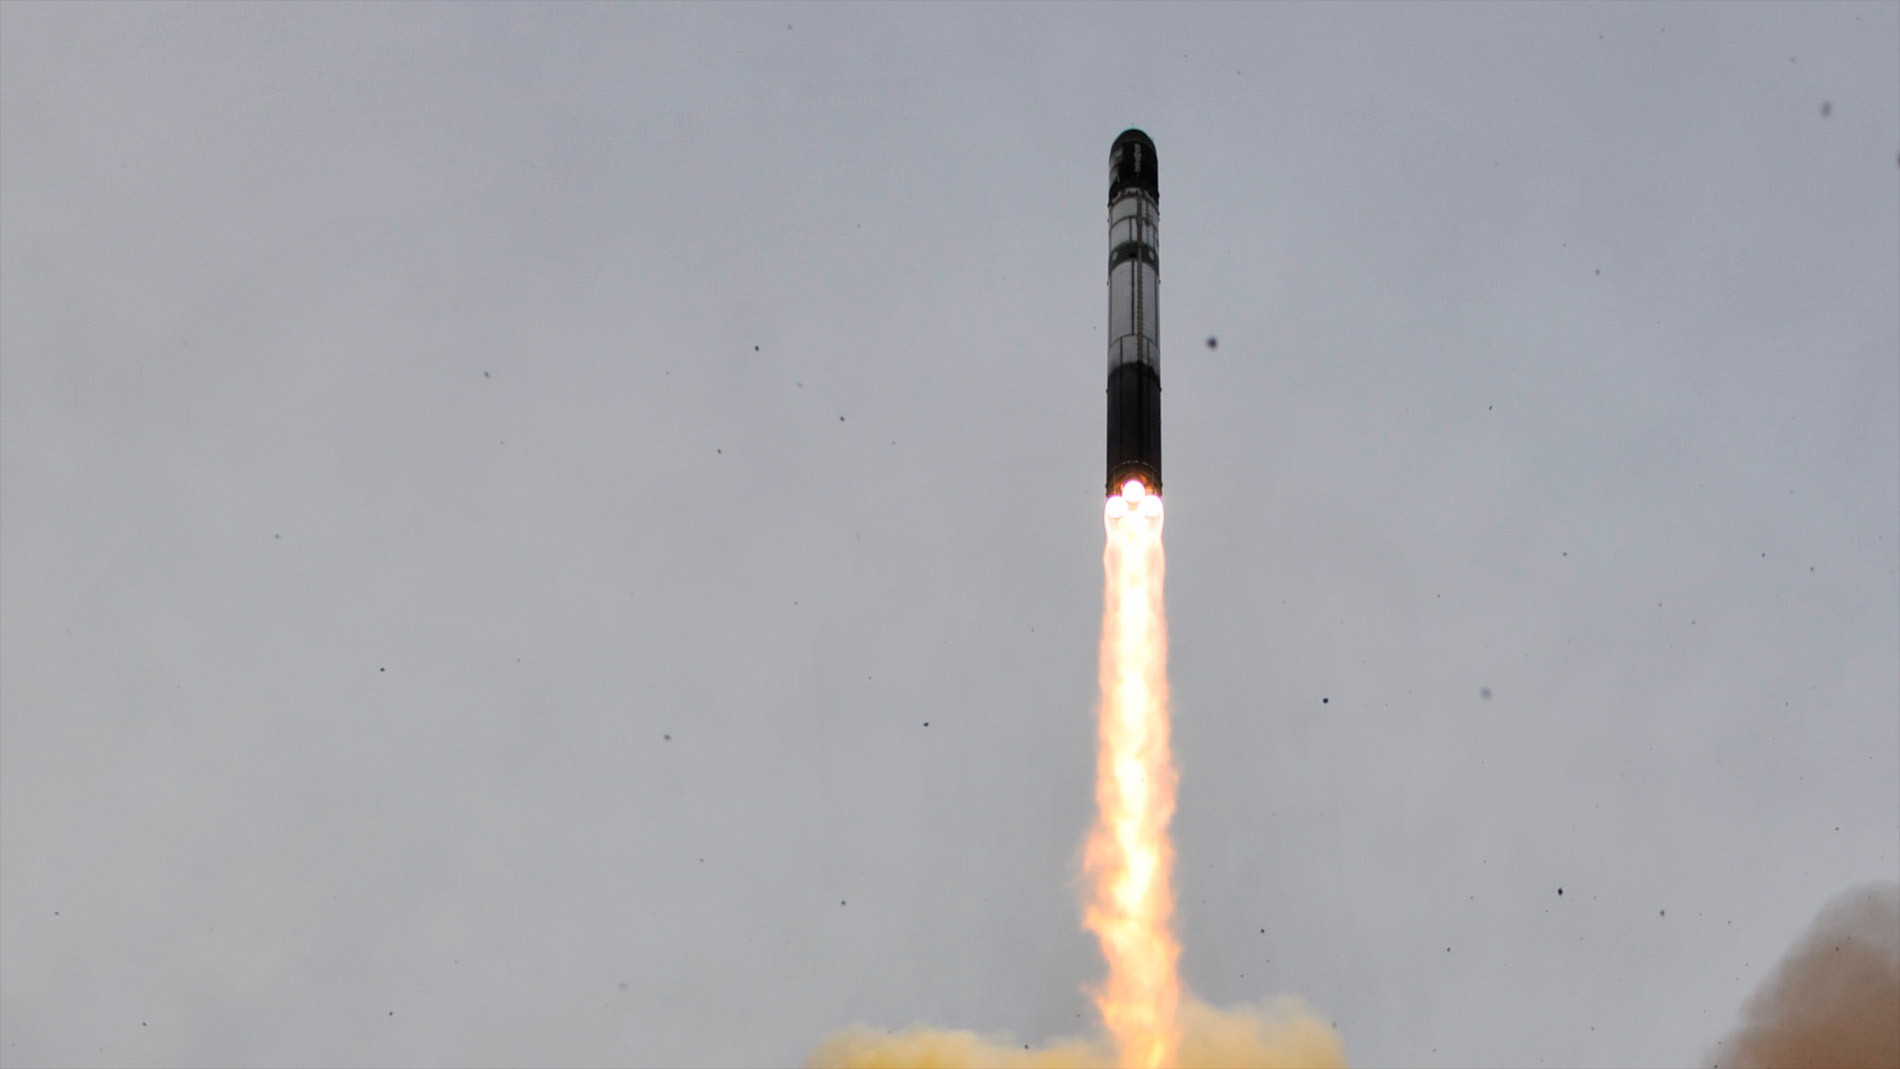 Décollage d'un lanceur Dnepr dérivé d'un missile Satan. © Esa, Stéphane Corvaja